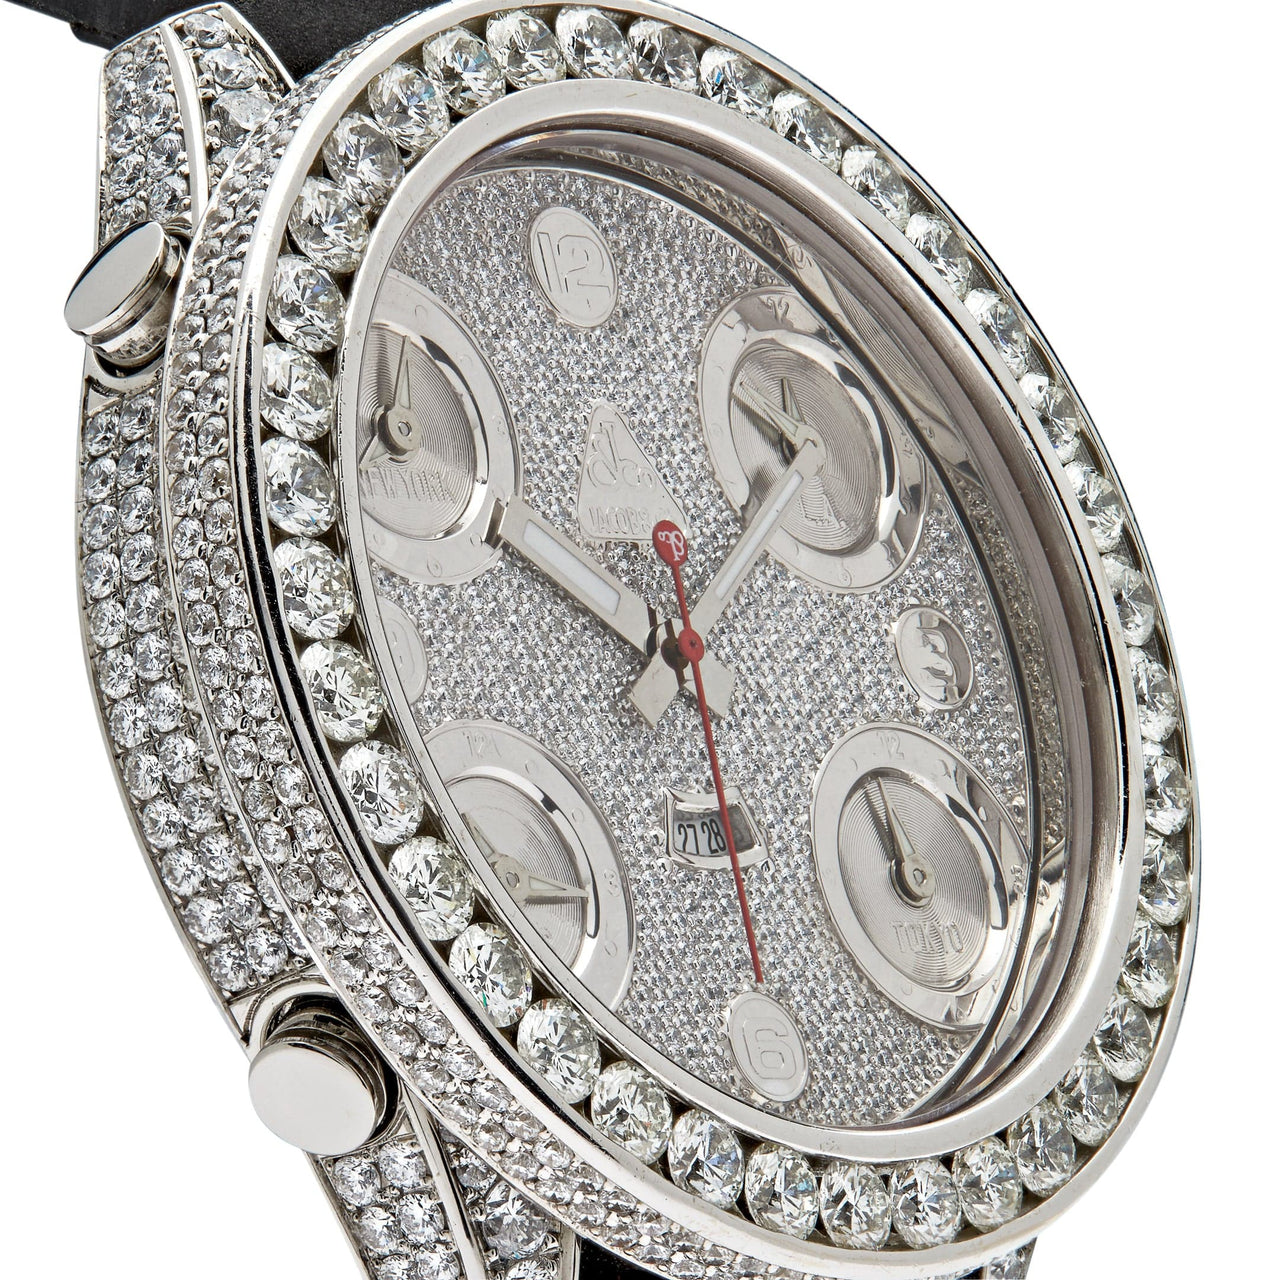 Luxury Watch Jacob & Co. Five Time Zone 40mm Steel Diamond Watch JCM-30 wrist aficionado